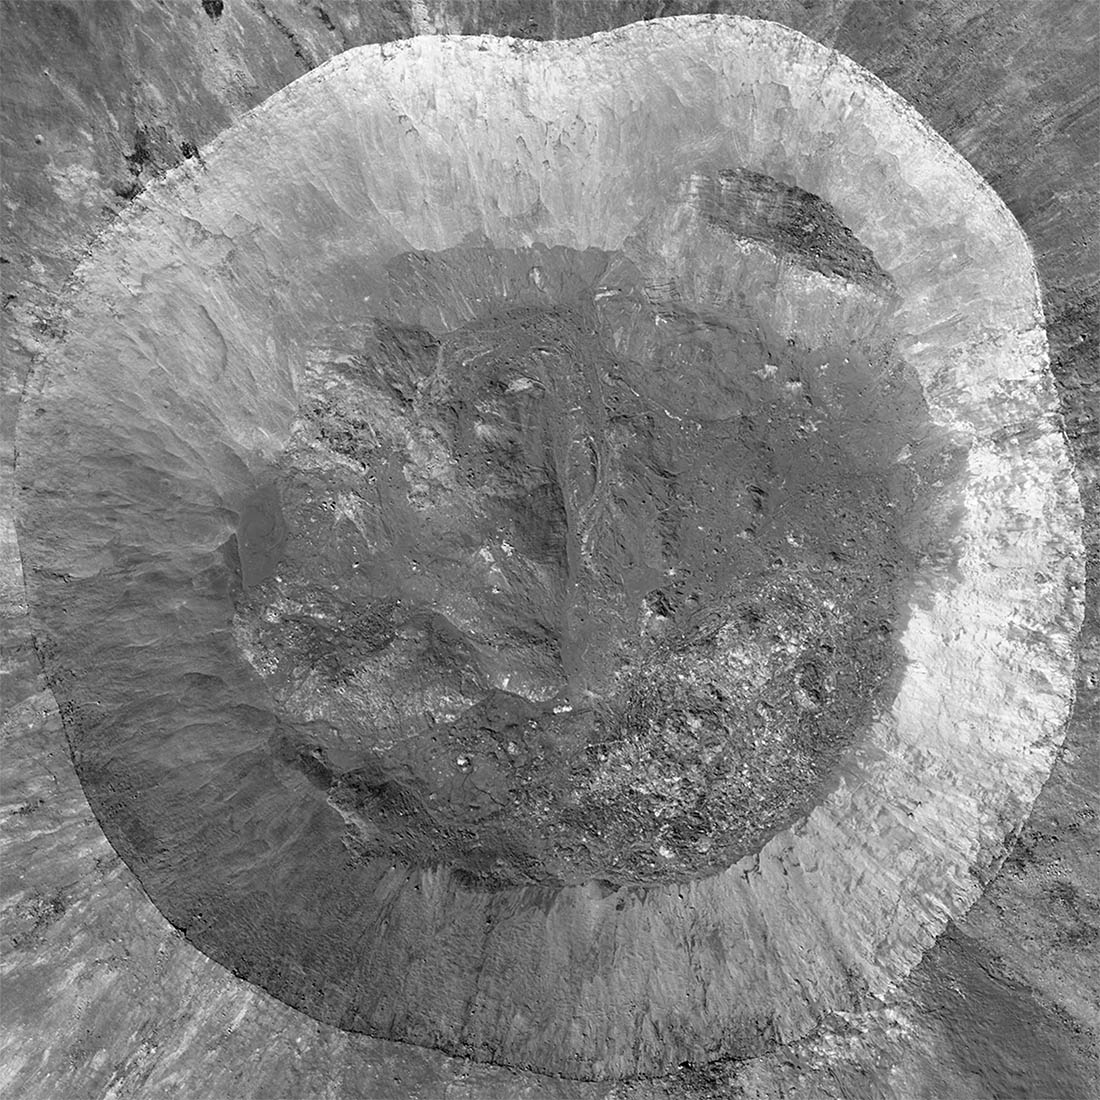 Image du cratère Giordano Bruno, de 22 kilomètres de diamètre, produite par la mission Lunar Reconnaissance Orbiter (LRO) de la NASA. Crédit : LROC team.